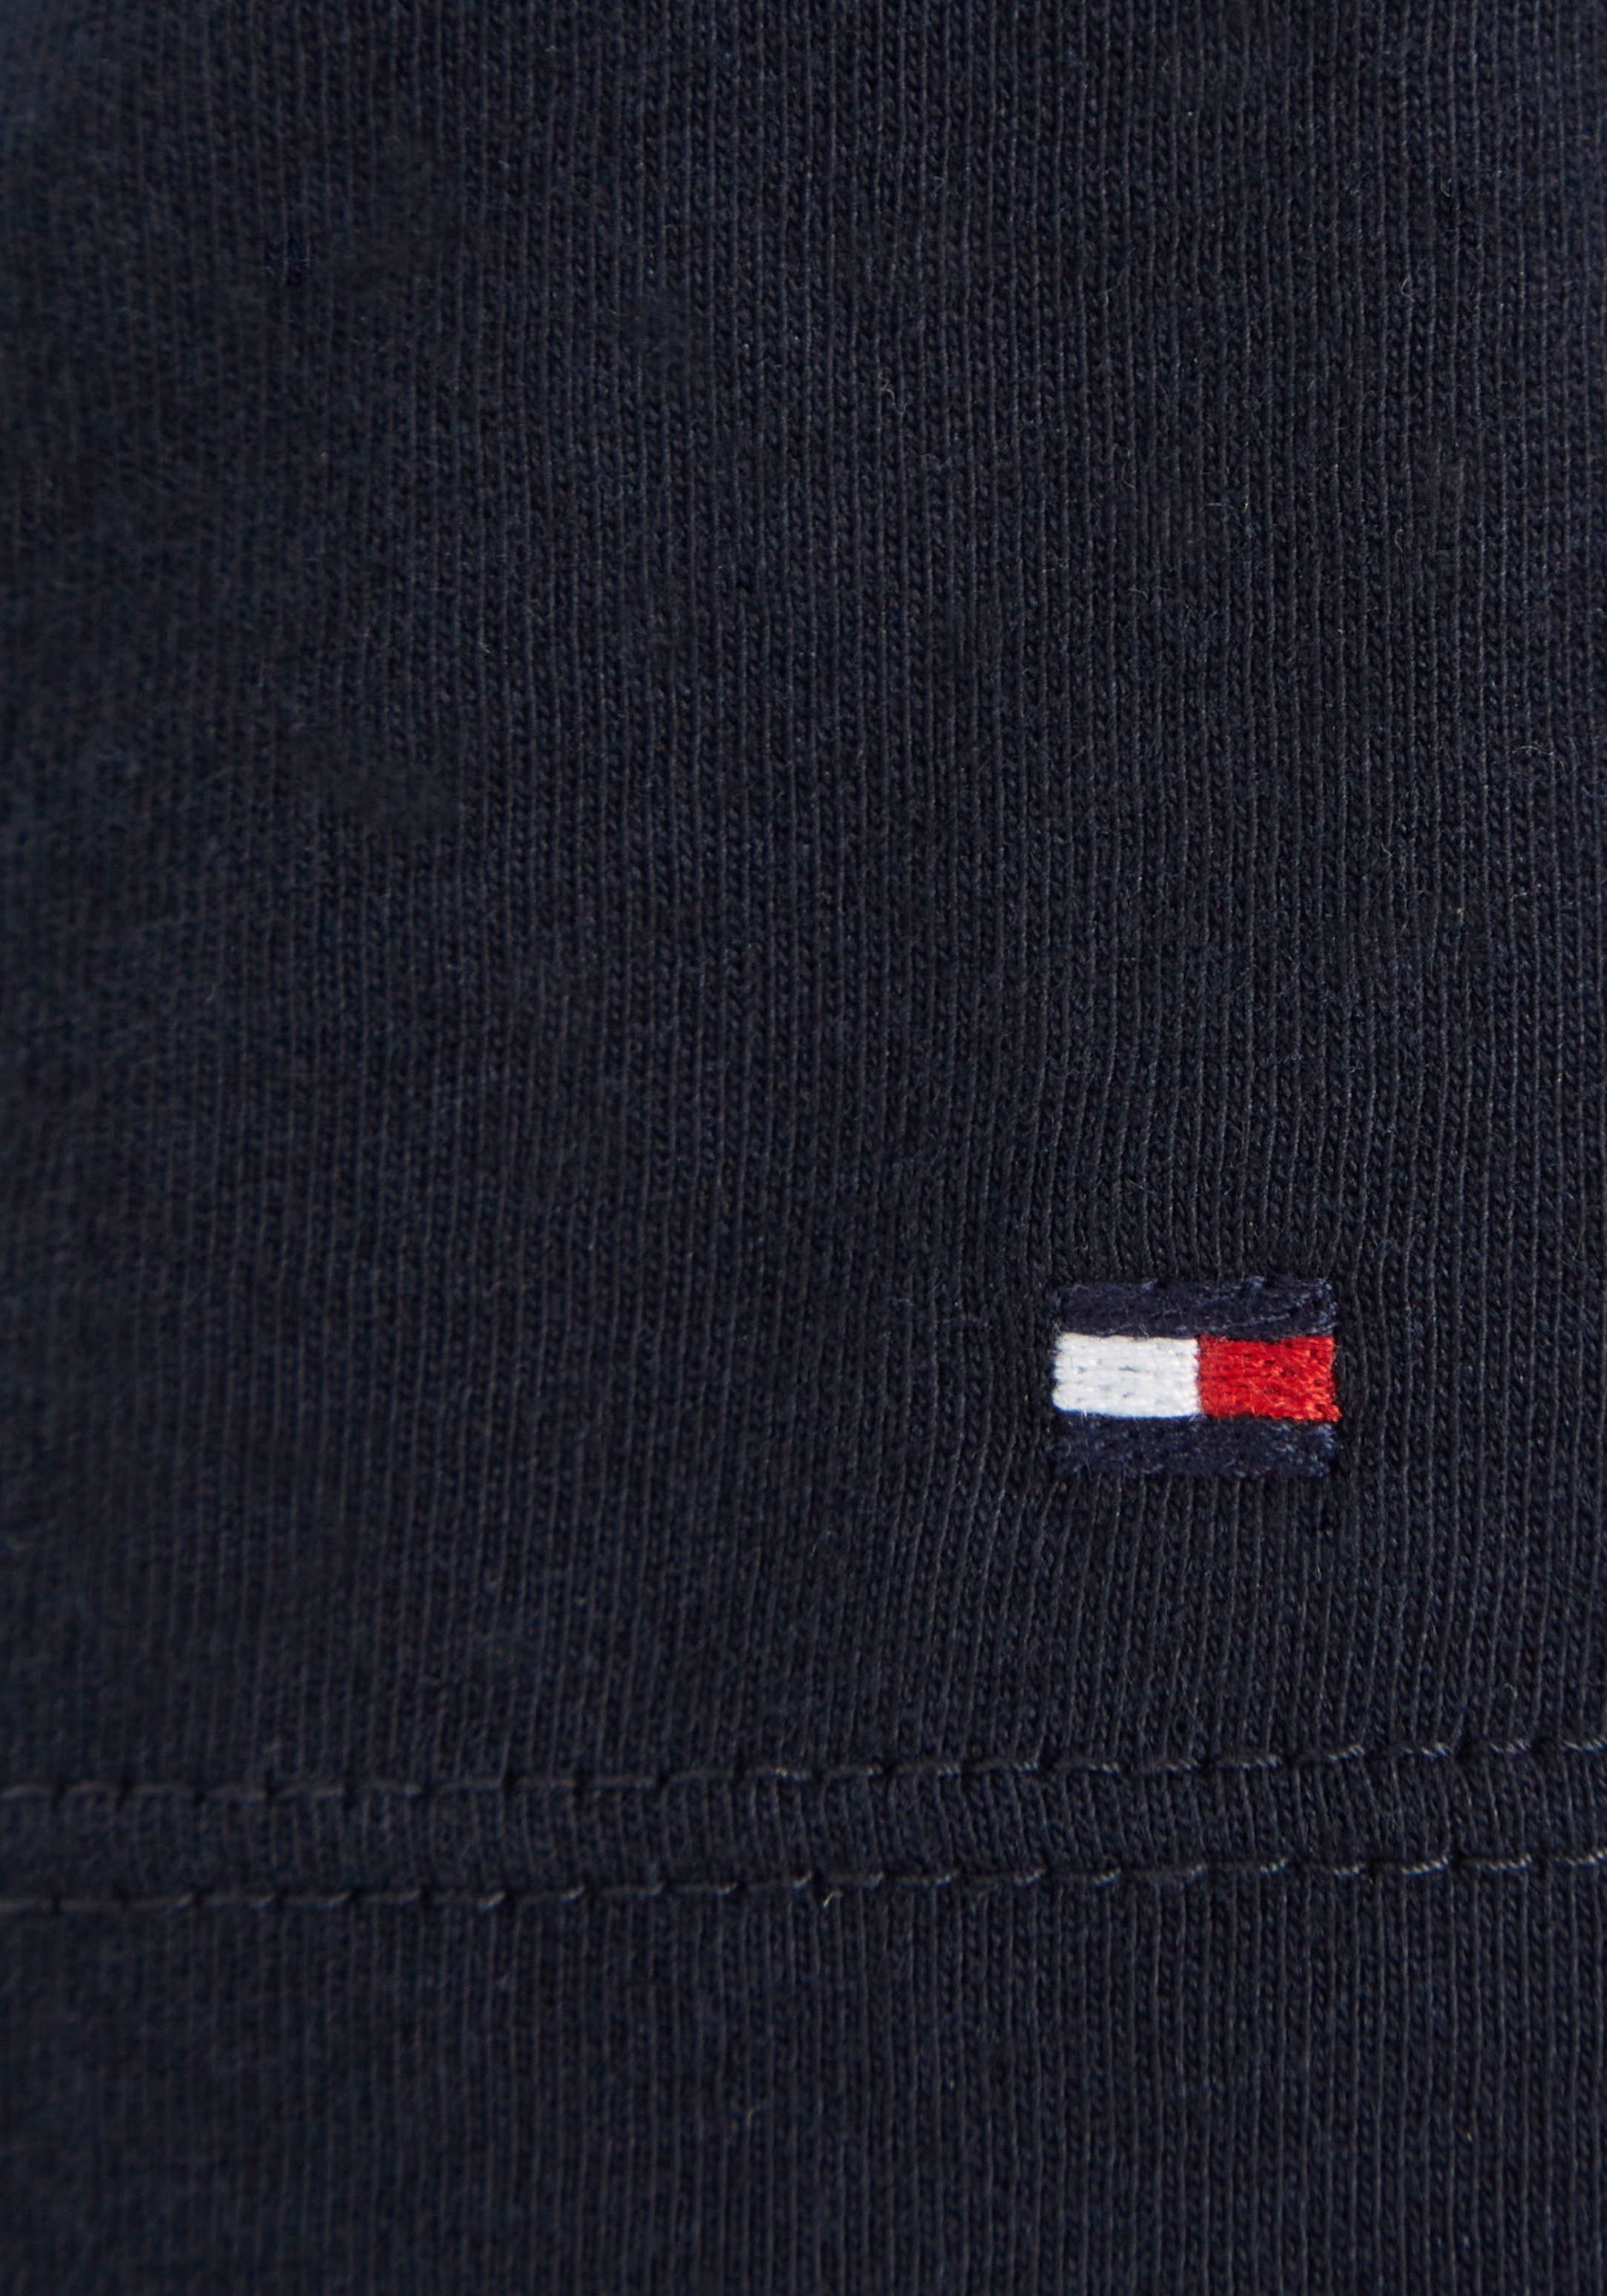 Tommy Hilfiger T-Shirt MONOTYPE modischem dunkelblau der Hilfiger-Logoschriftzug mit TEE auf S/S Brust